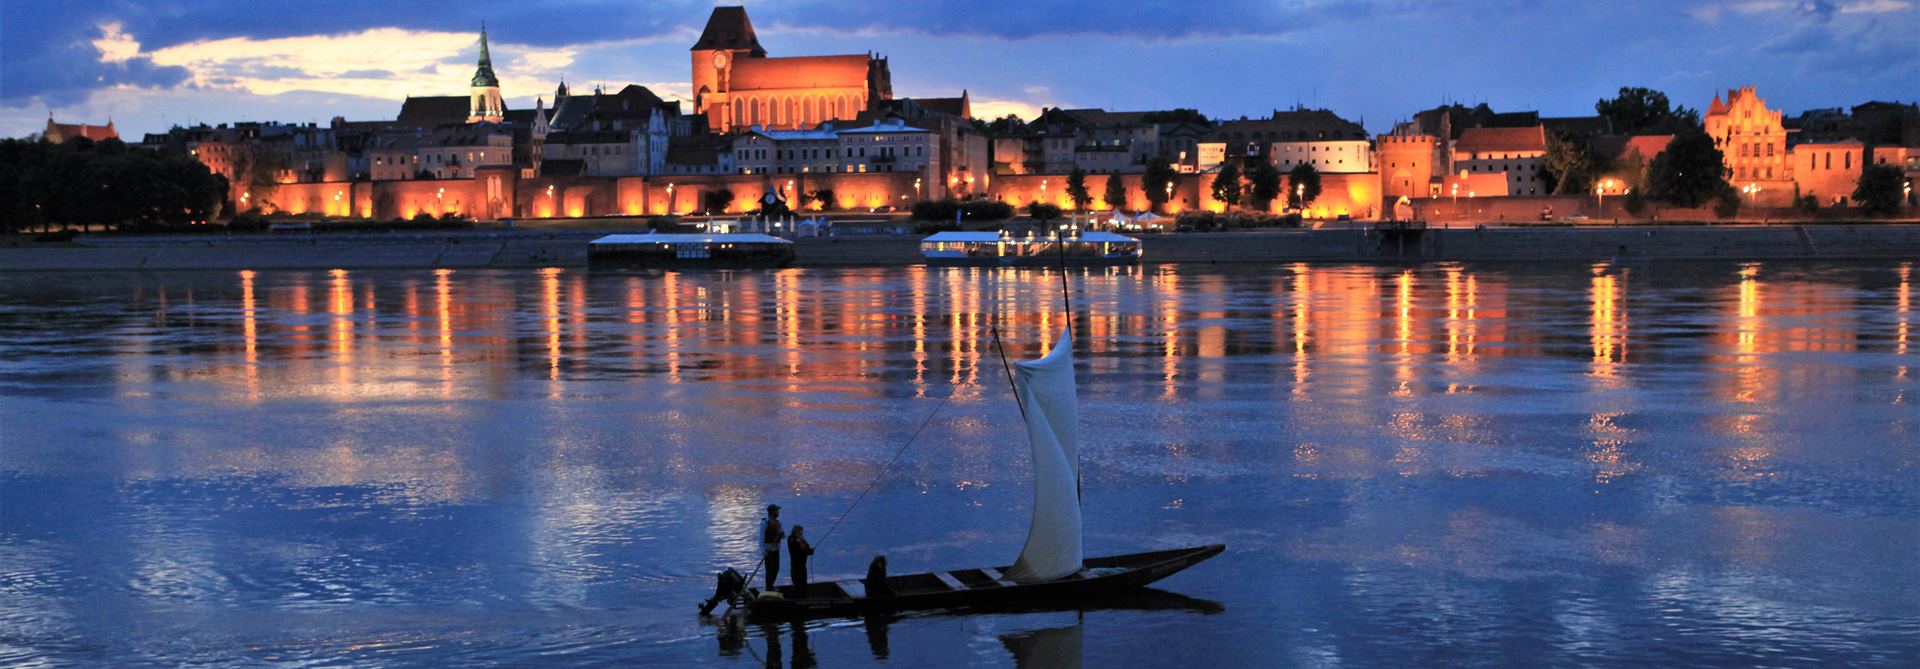 na tle rozświetlonej, wieczornej panoramy Torunia płynie tradycyjna łódź na żaglu z trzema osobami na pokładzie. Zdjęcie pokazuje rejsy w Toruniu.